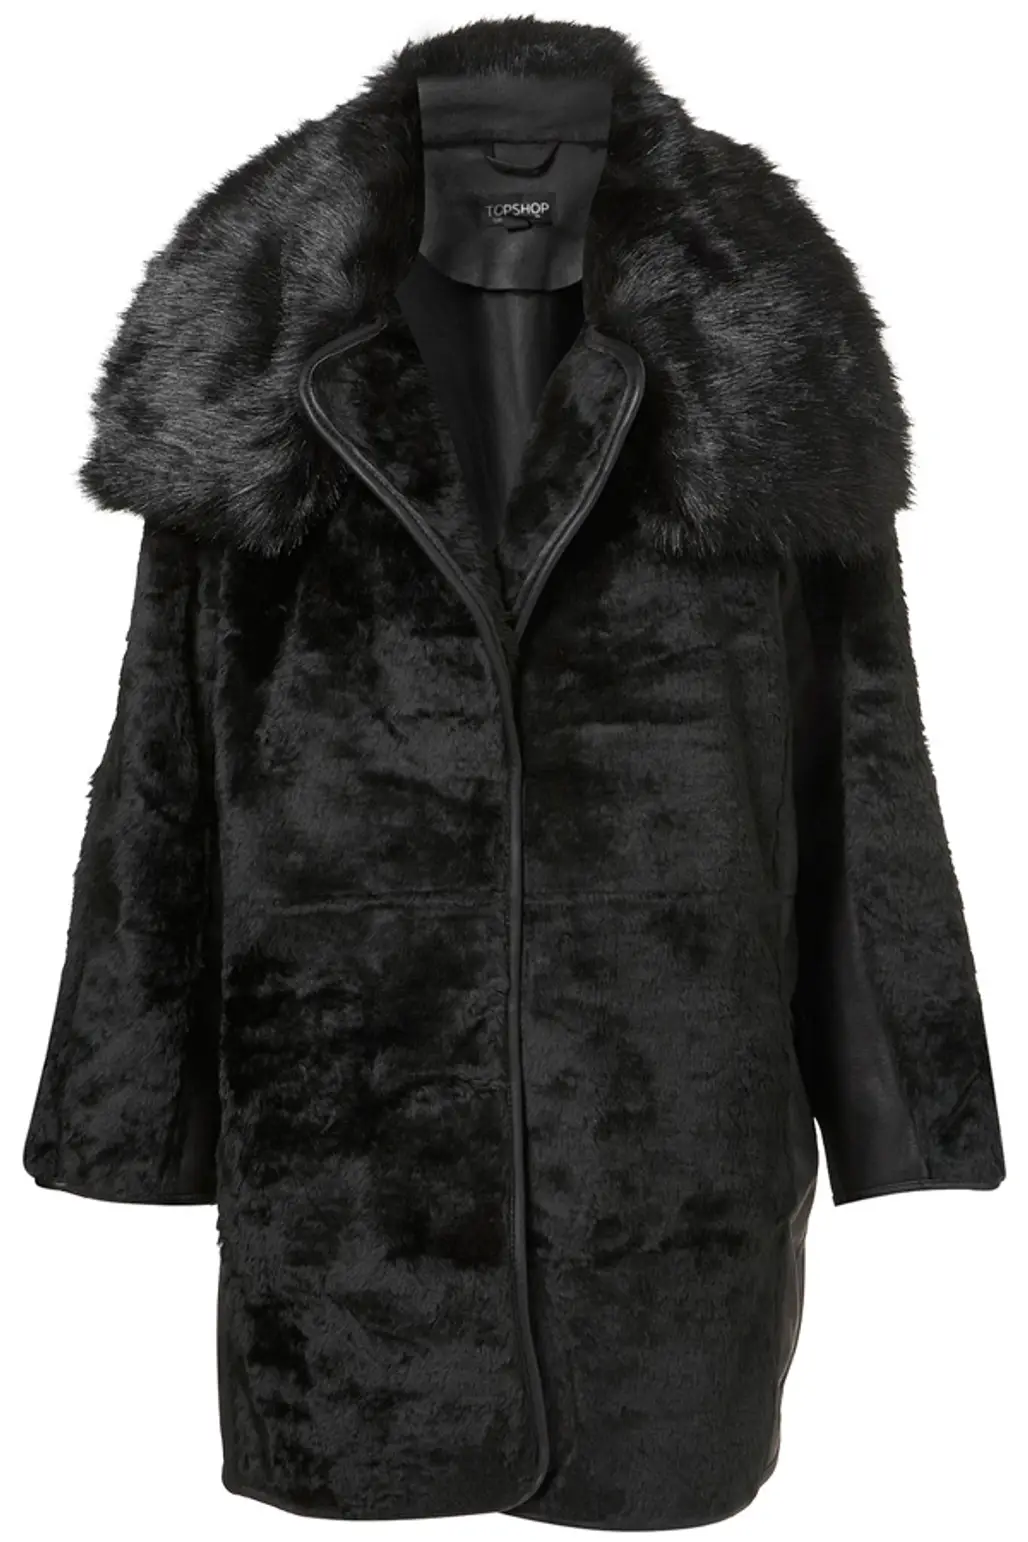 The Faux Fur Coat